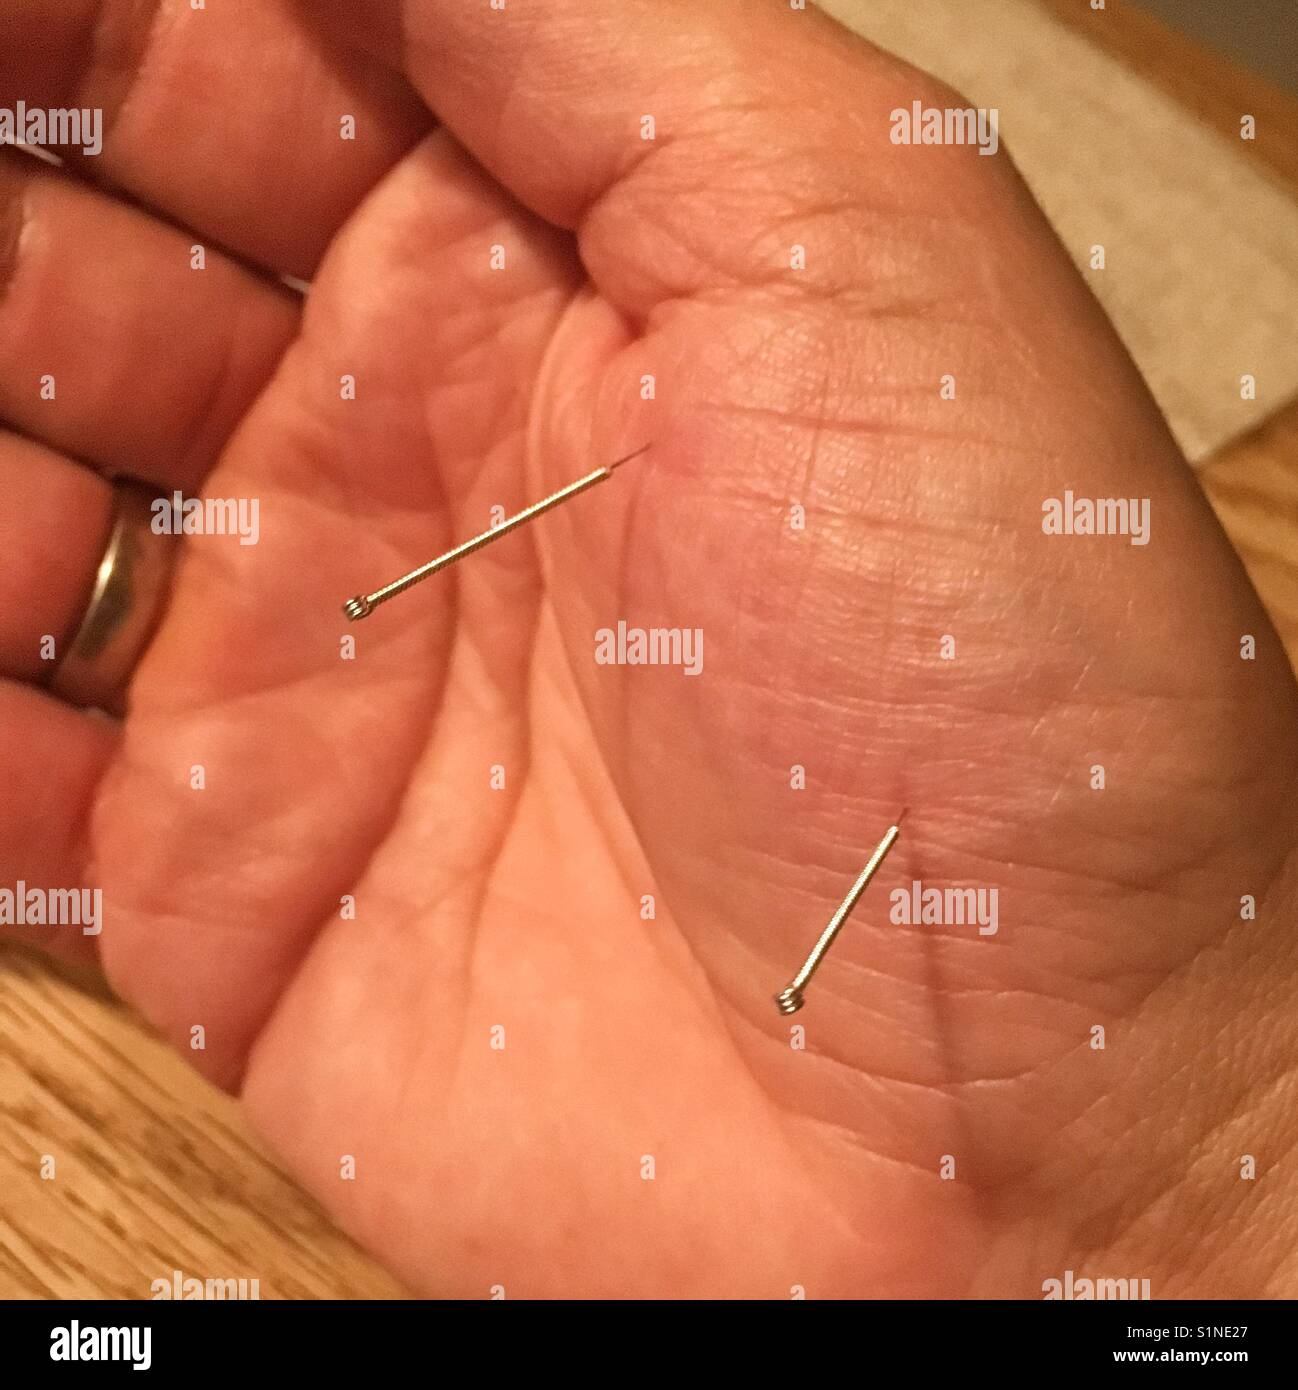 Aiguille d'Acupuncture dans un mans hand Banque D'Images